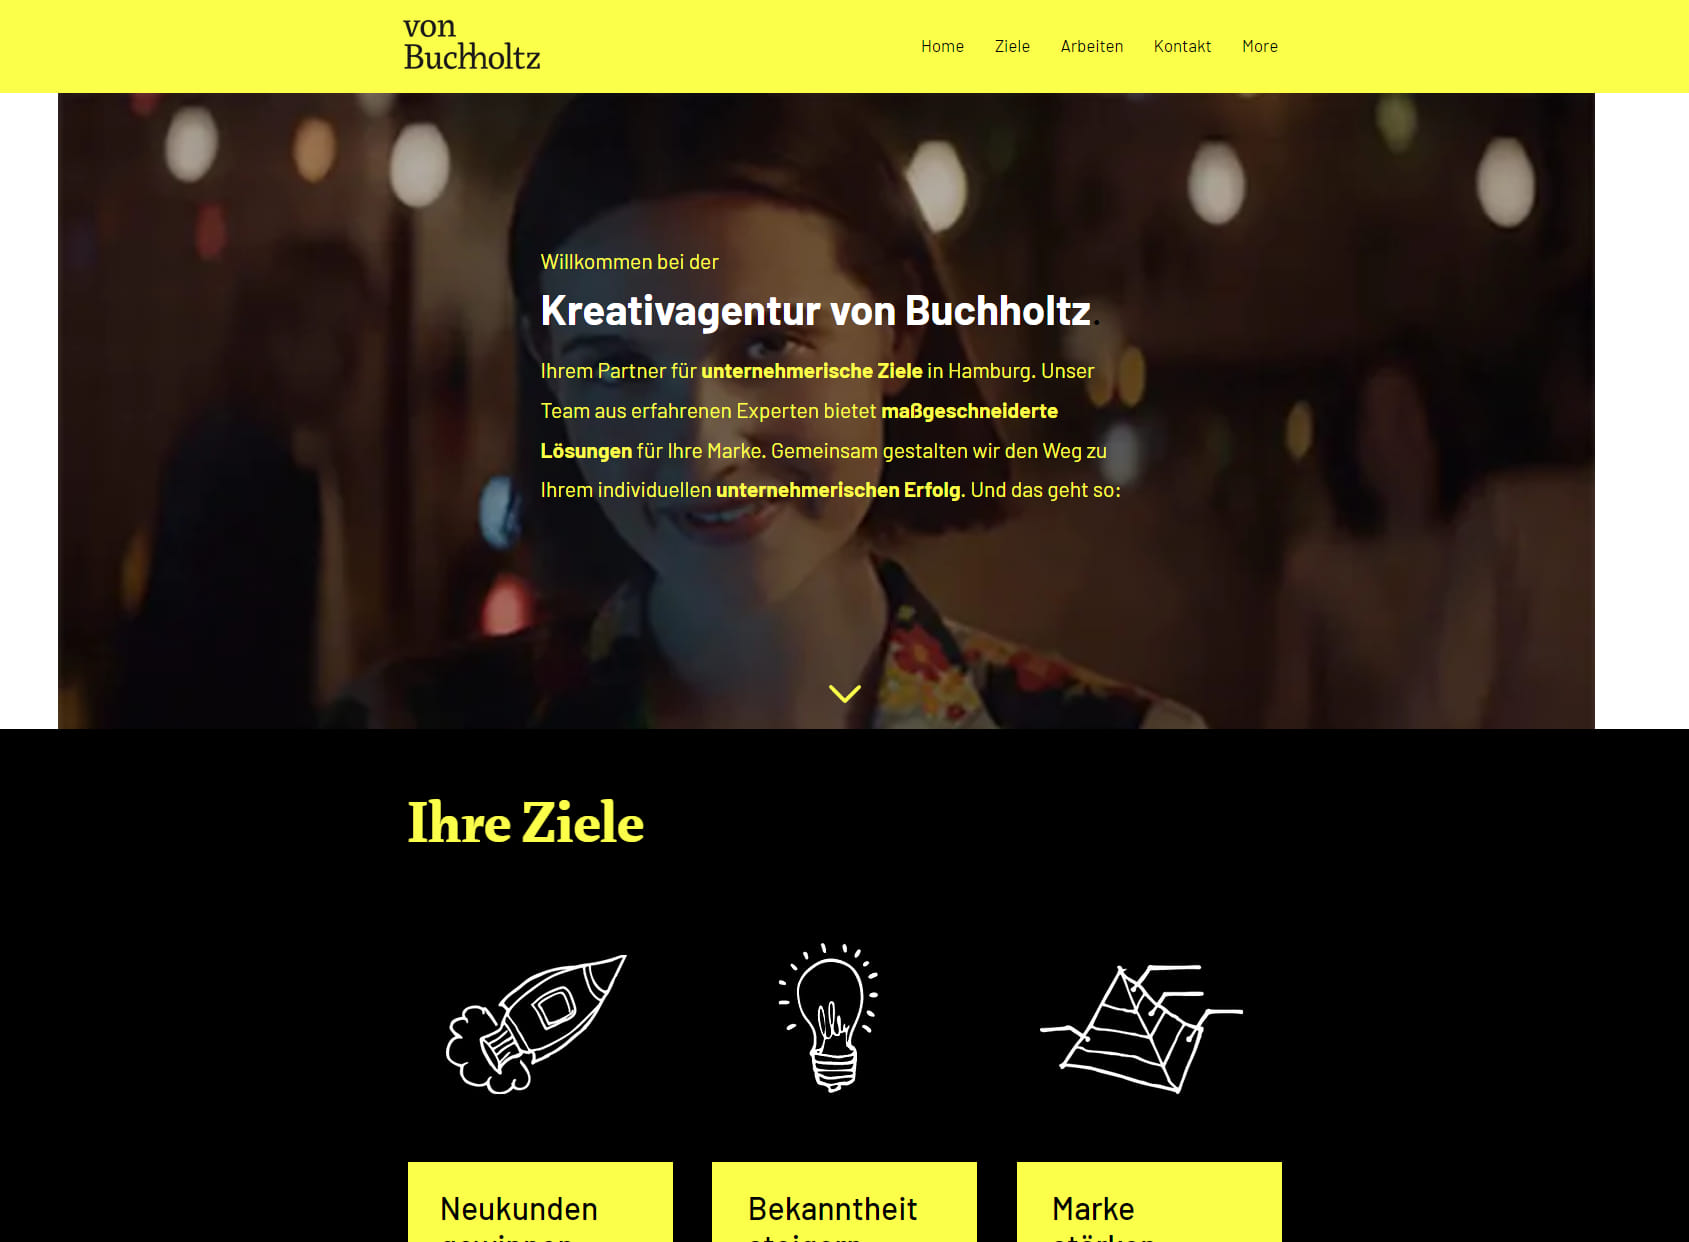 von Buchholtz GmbH - Kreativagentur